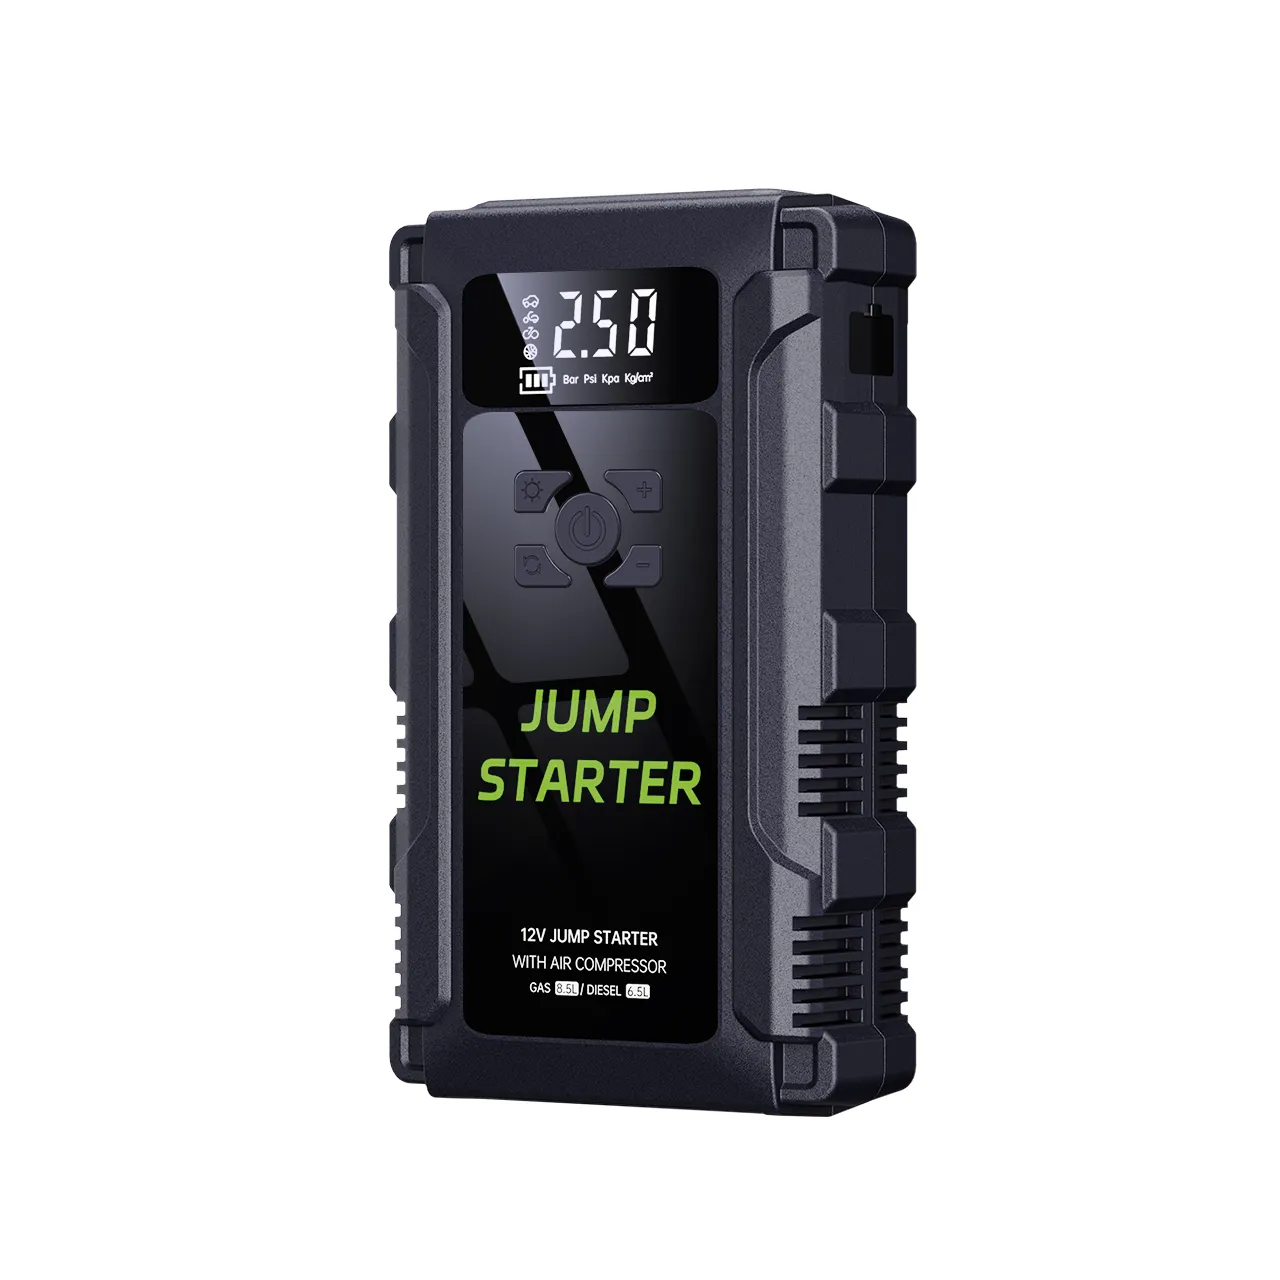 12v bateria do carro Jump Starter com compressor de ar bateria Jump Starter portátil multi função bomba de ar para carro